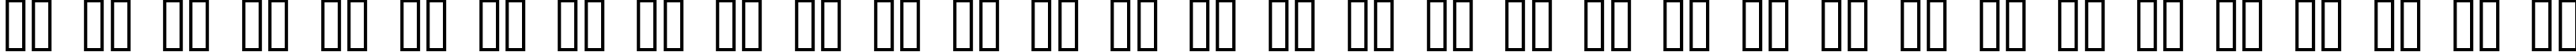 Пример написания русского алфавита шрифтом FontCo Designs 2